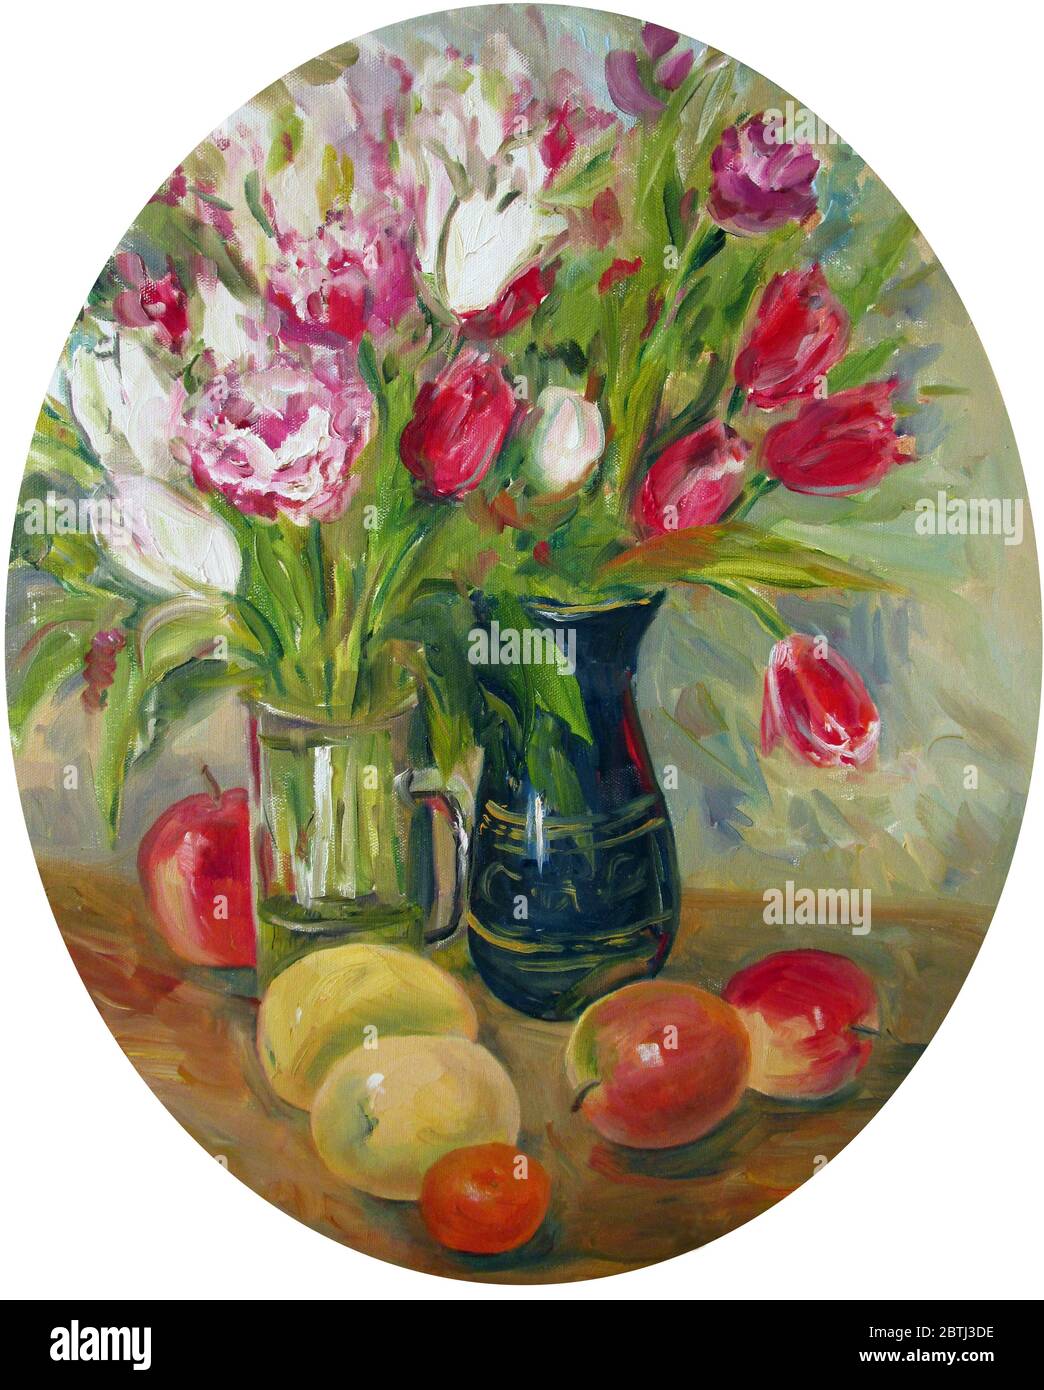 ovale encore vie avec des tulipes et des fruits, peinture à l'huile Banque D'Images